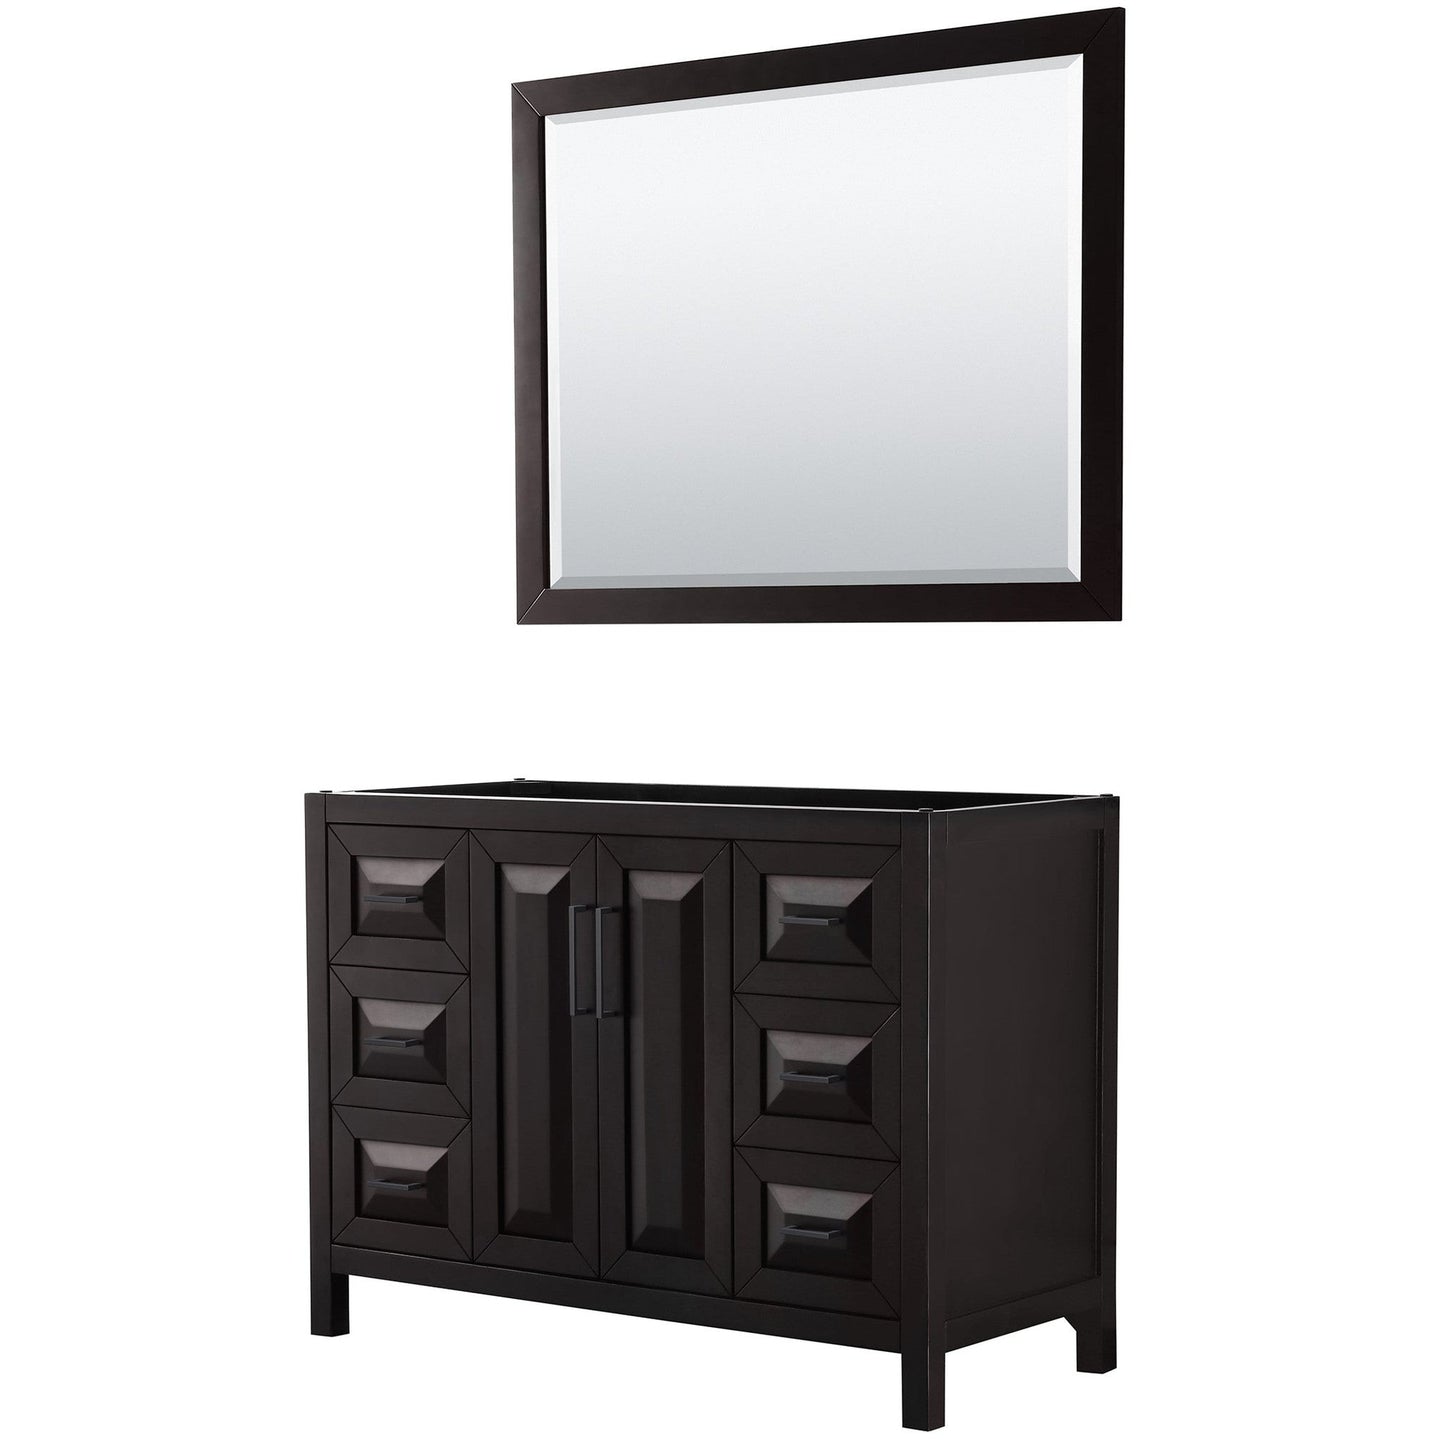 Daria 48" Single Bathroom Vanity in Dark Espresso, No Countertop, No Sink, Matte Black Trim, 46" Mirror